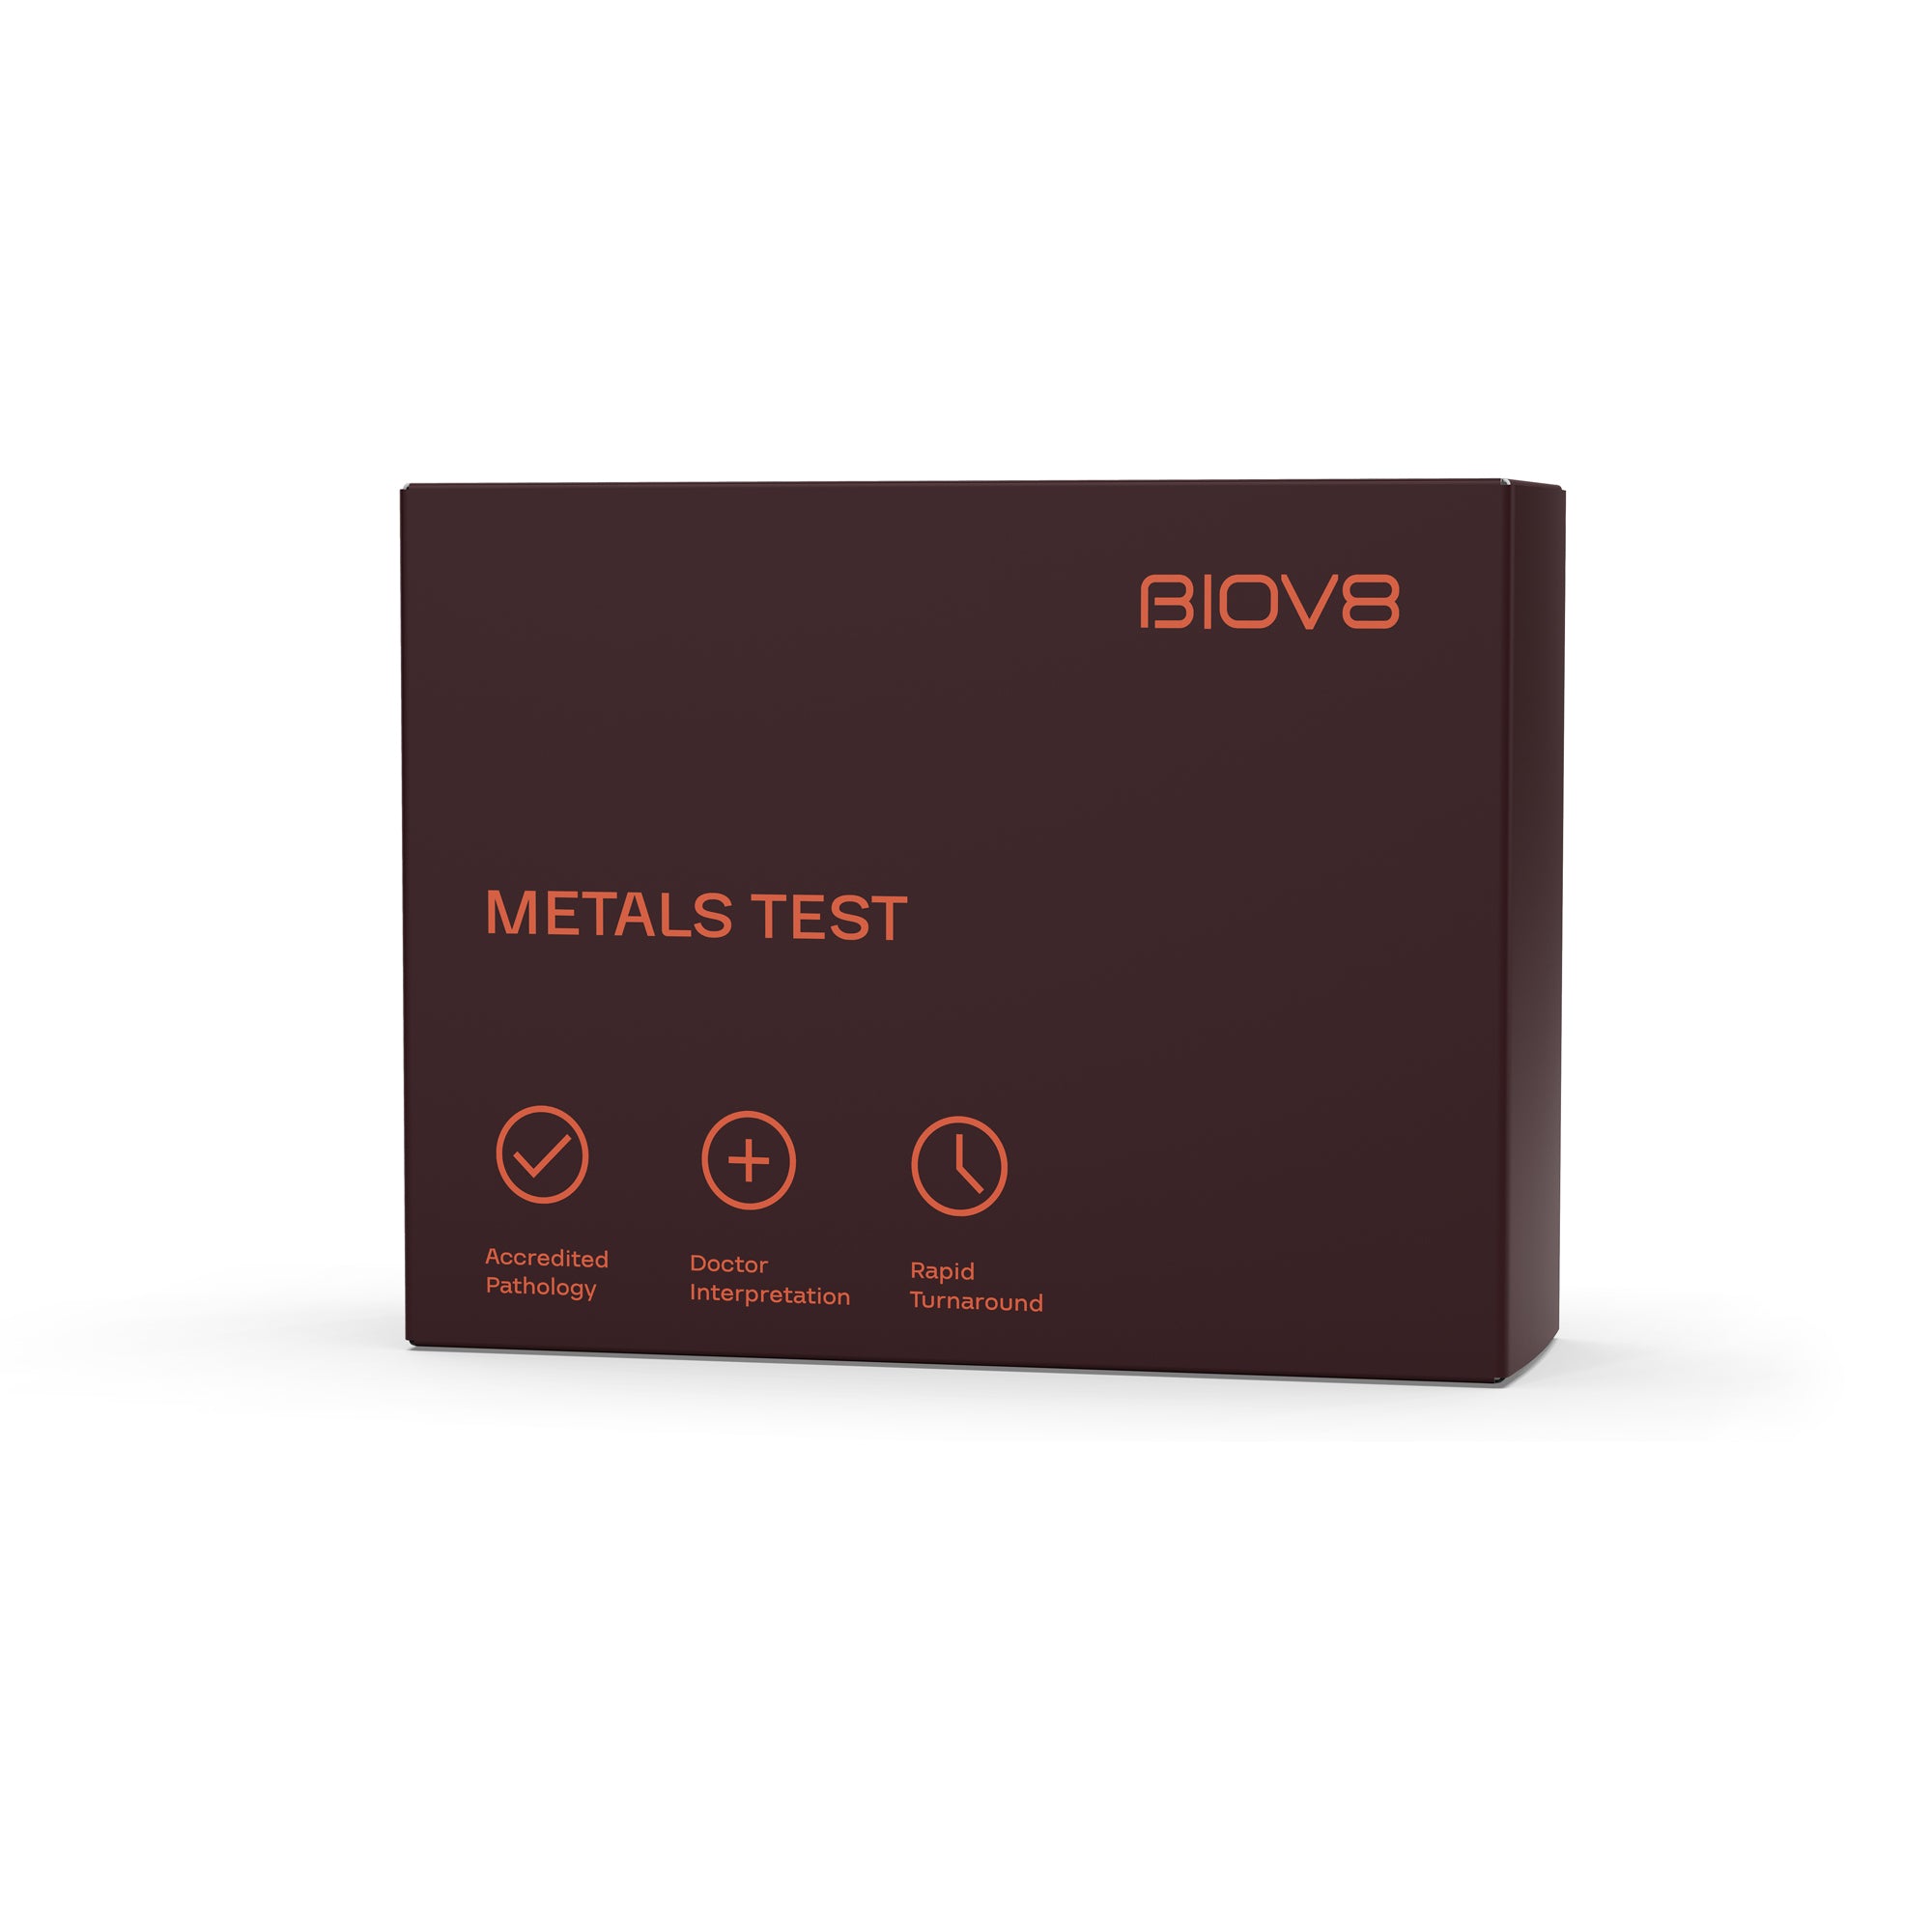 Biov8's Metals blood work analysis kit